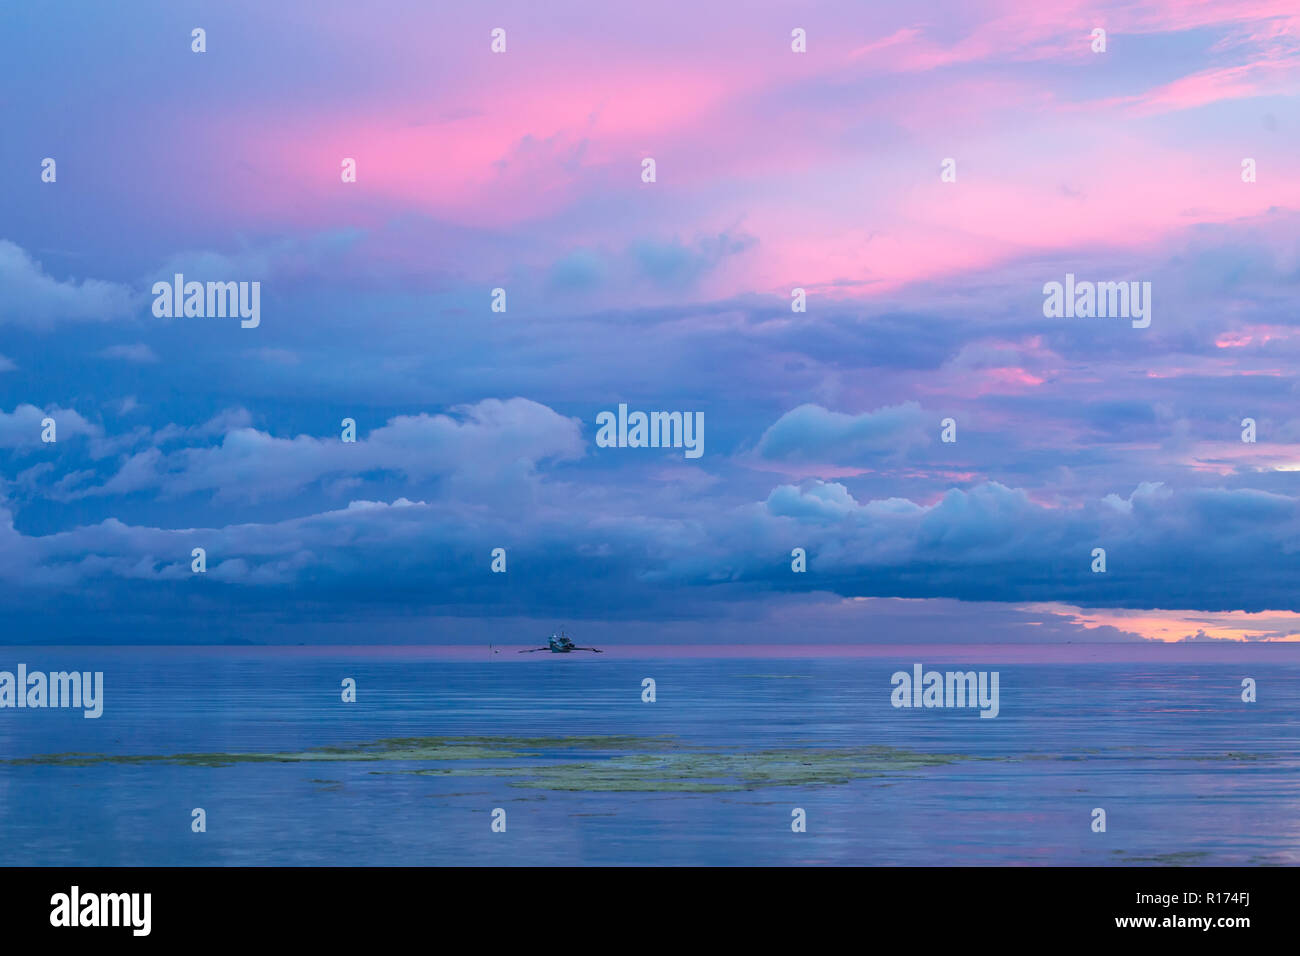 Bella Blu crepuscolo tramonto nelle Filippine con la rosa, blu e viola i colori del cielo si riflette nella calma oceano tranquillo sotto contro Foto Stock